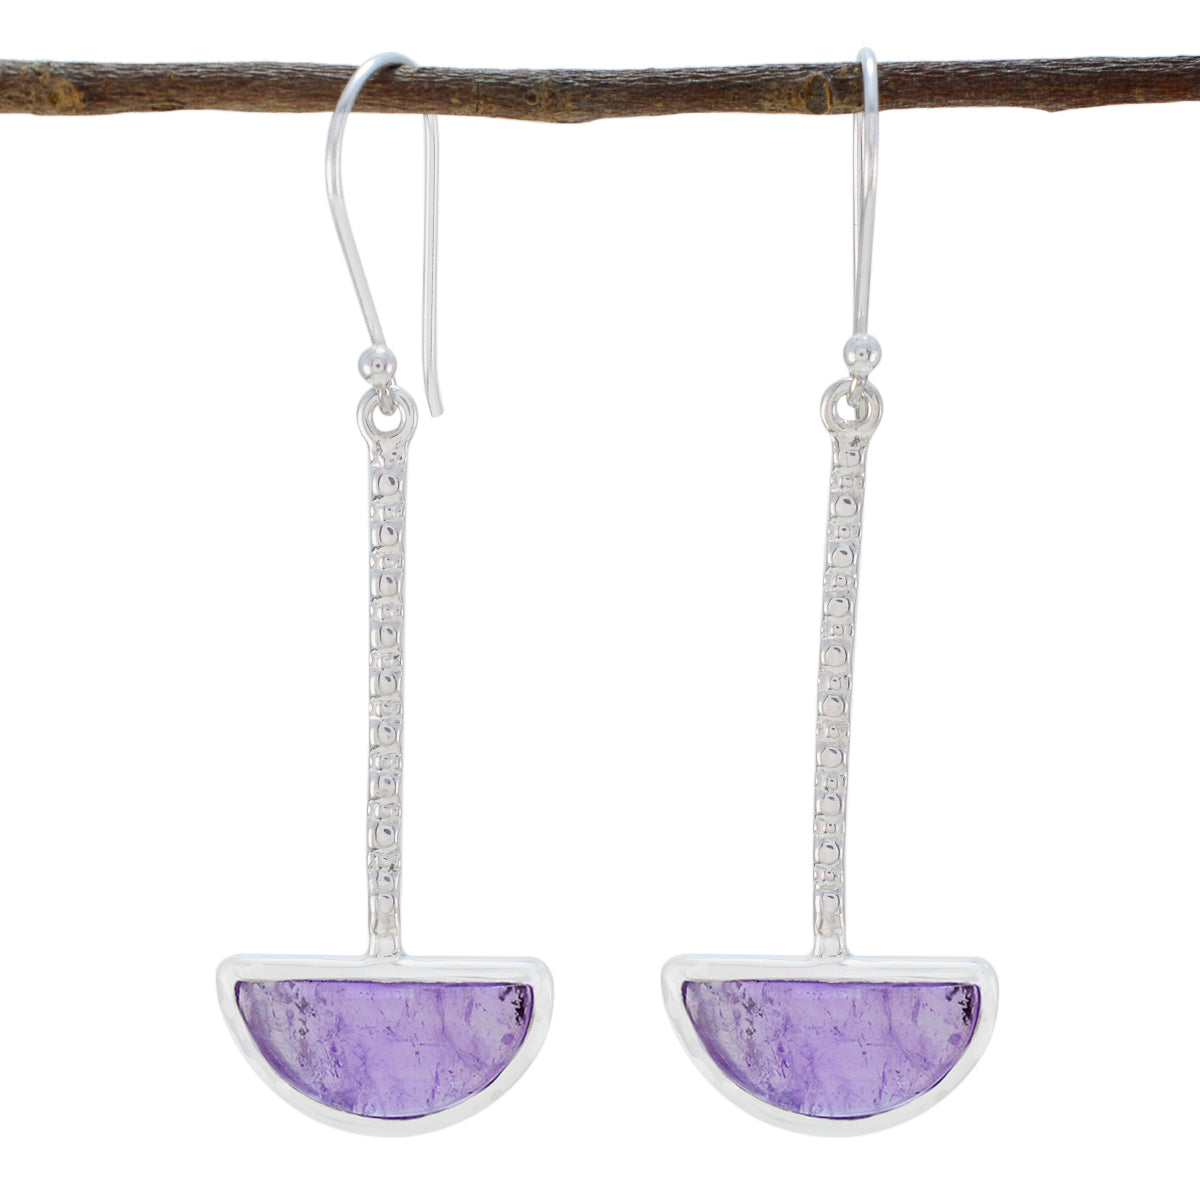 Riyo Real Gemstones fancy Cabochon Purple Amethyst Silver Earrings gift for mom birthday